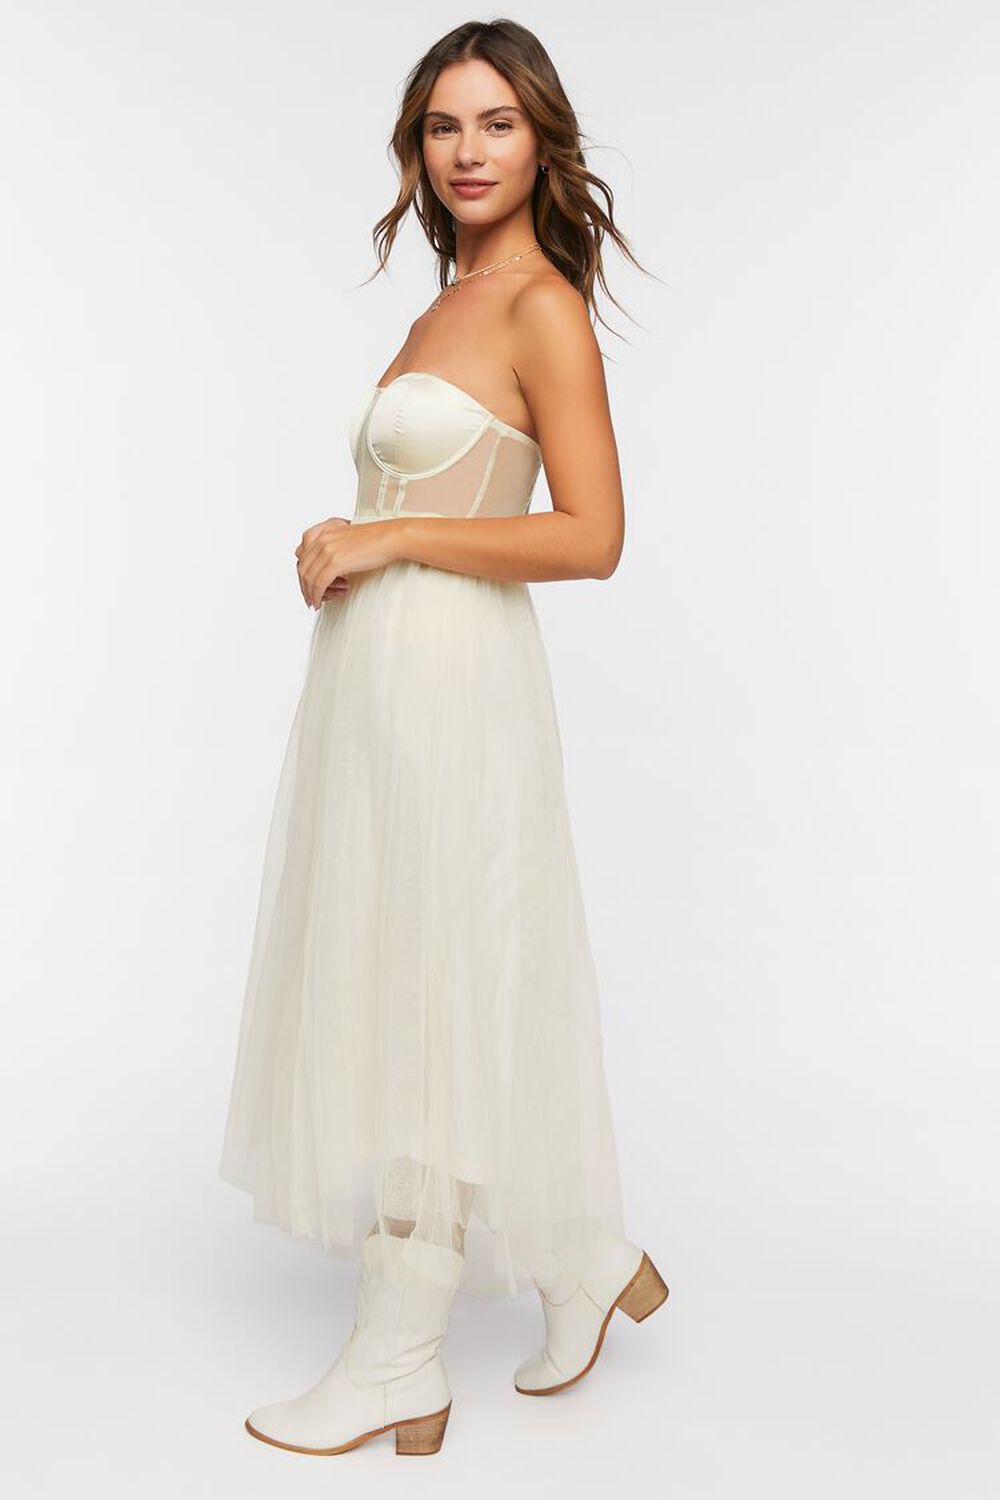 WHITE Strapless Mesh Midi Dress, image 2